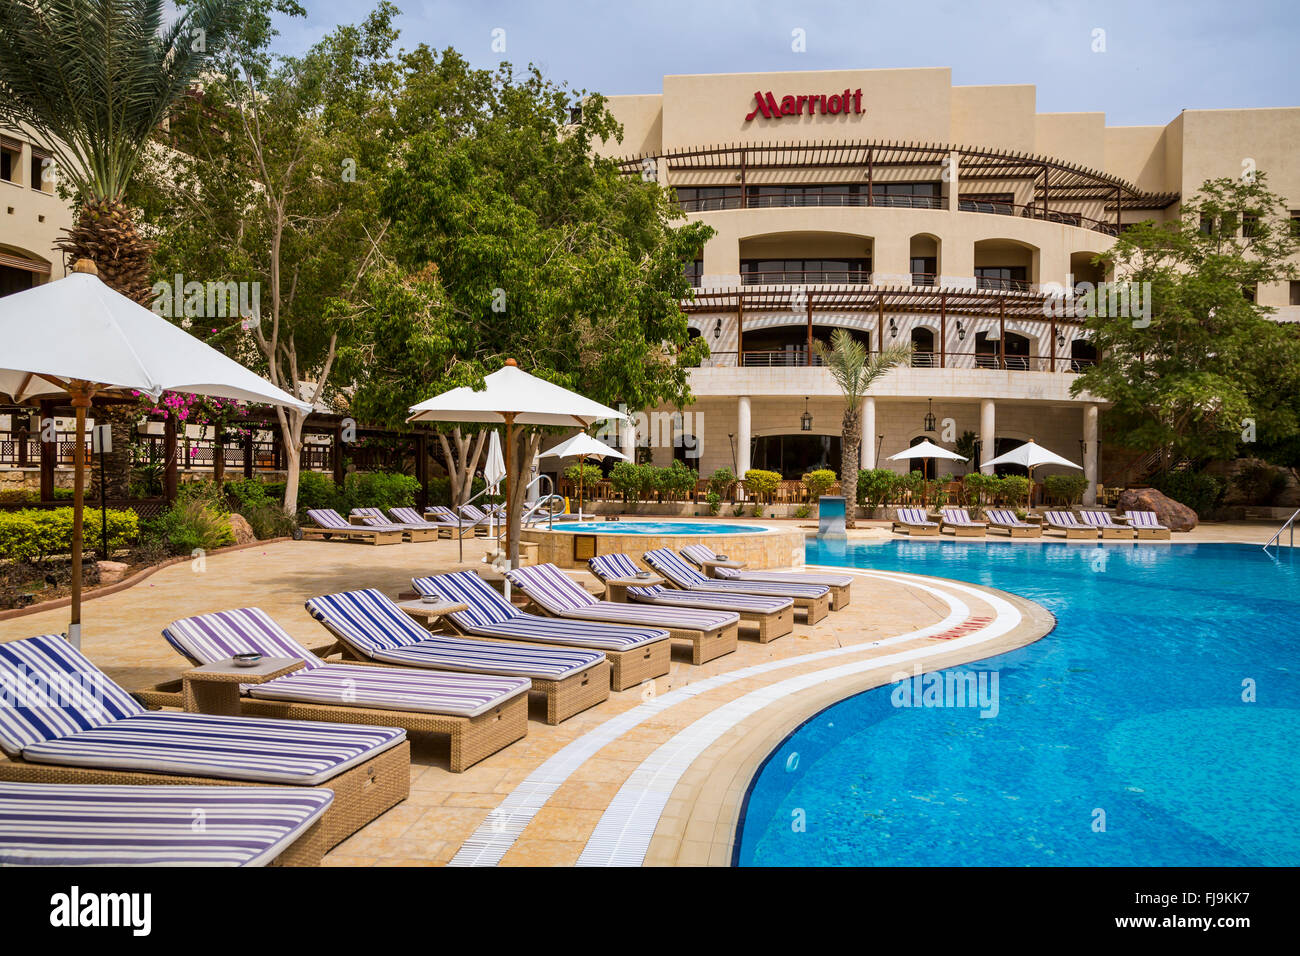 Der Poolbereich des Marriott Hotels am Toten Meer, Haschemitischen Königreich Jordanien Nahost. Stockfoto